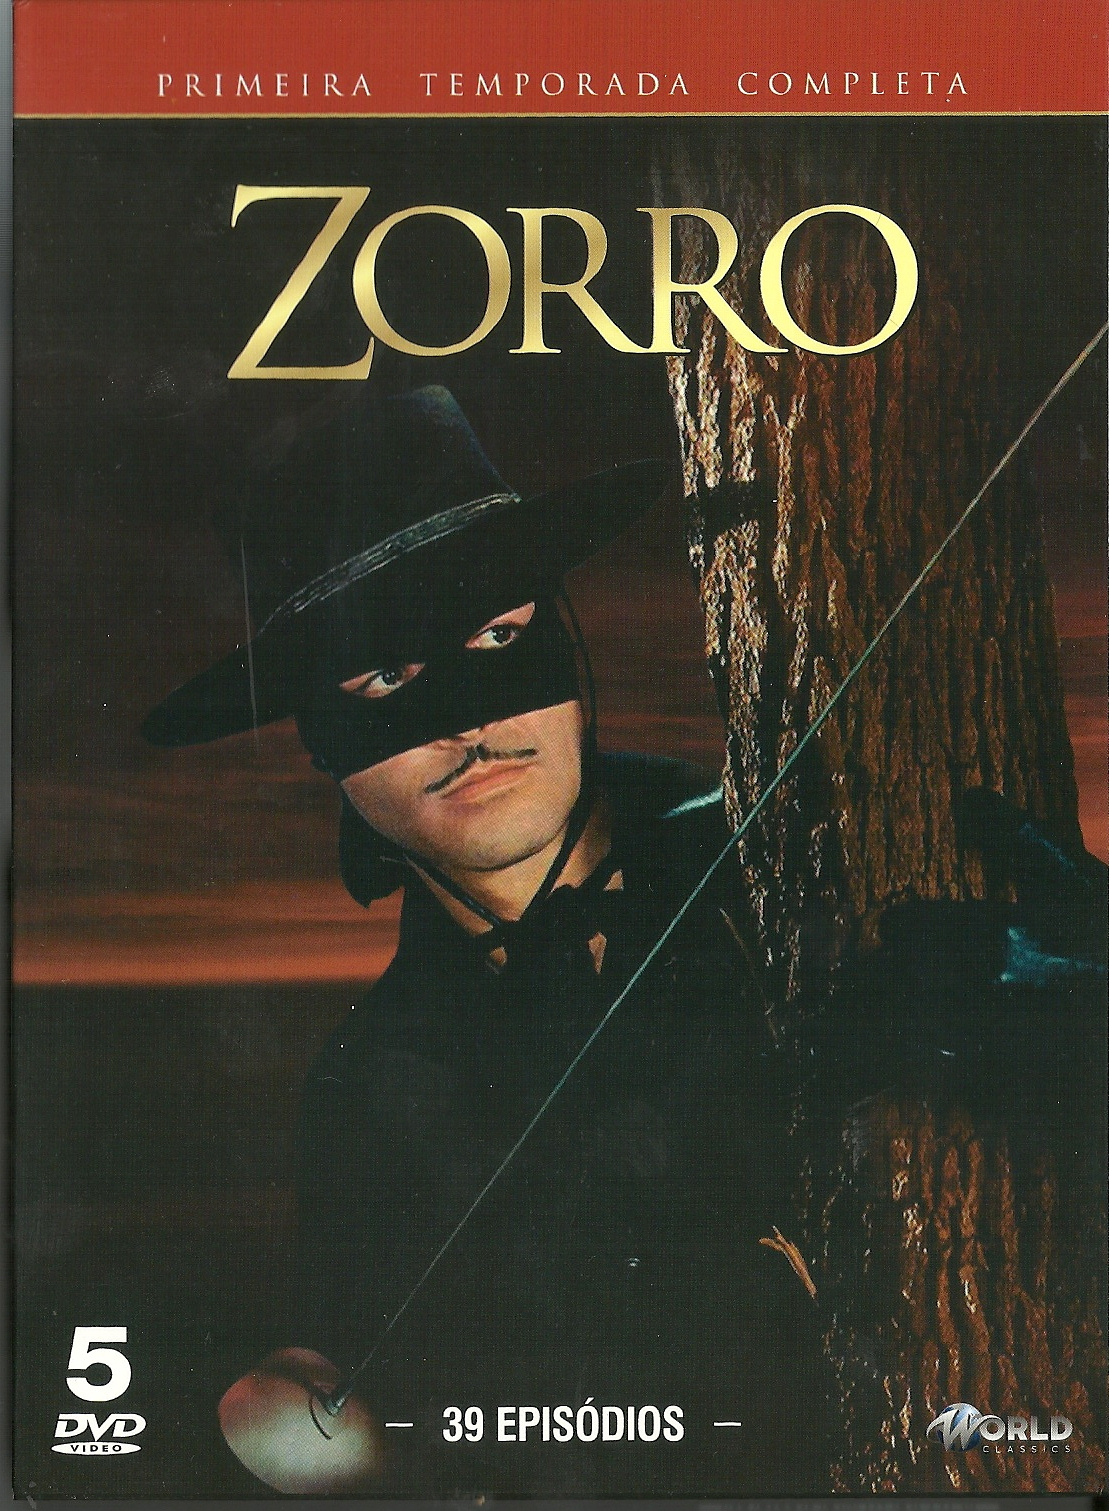 ZORRO 1 TEMPORADA COMPLETA - Digital - 5 DVDs - 39 EPIS.